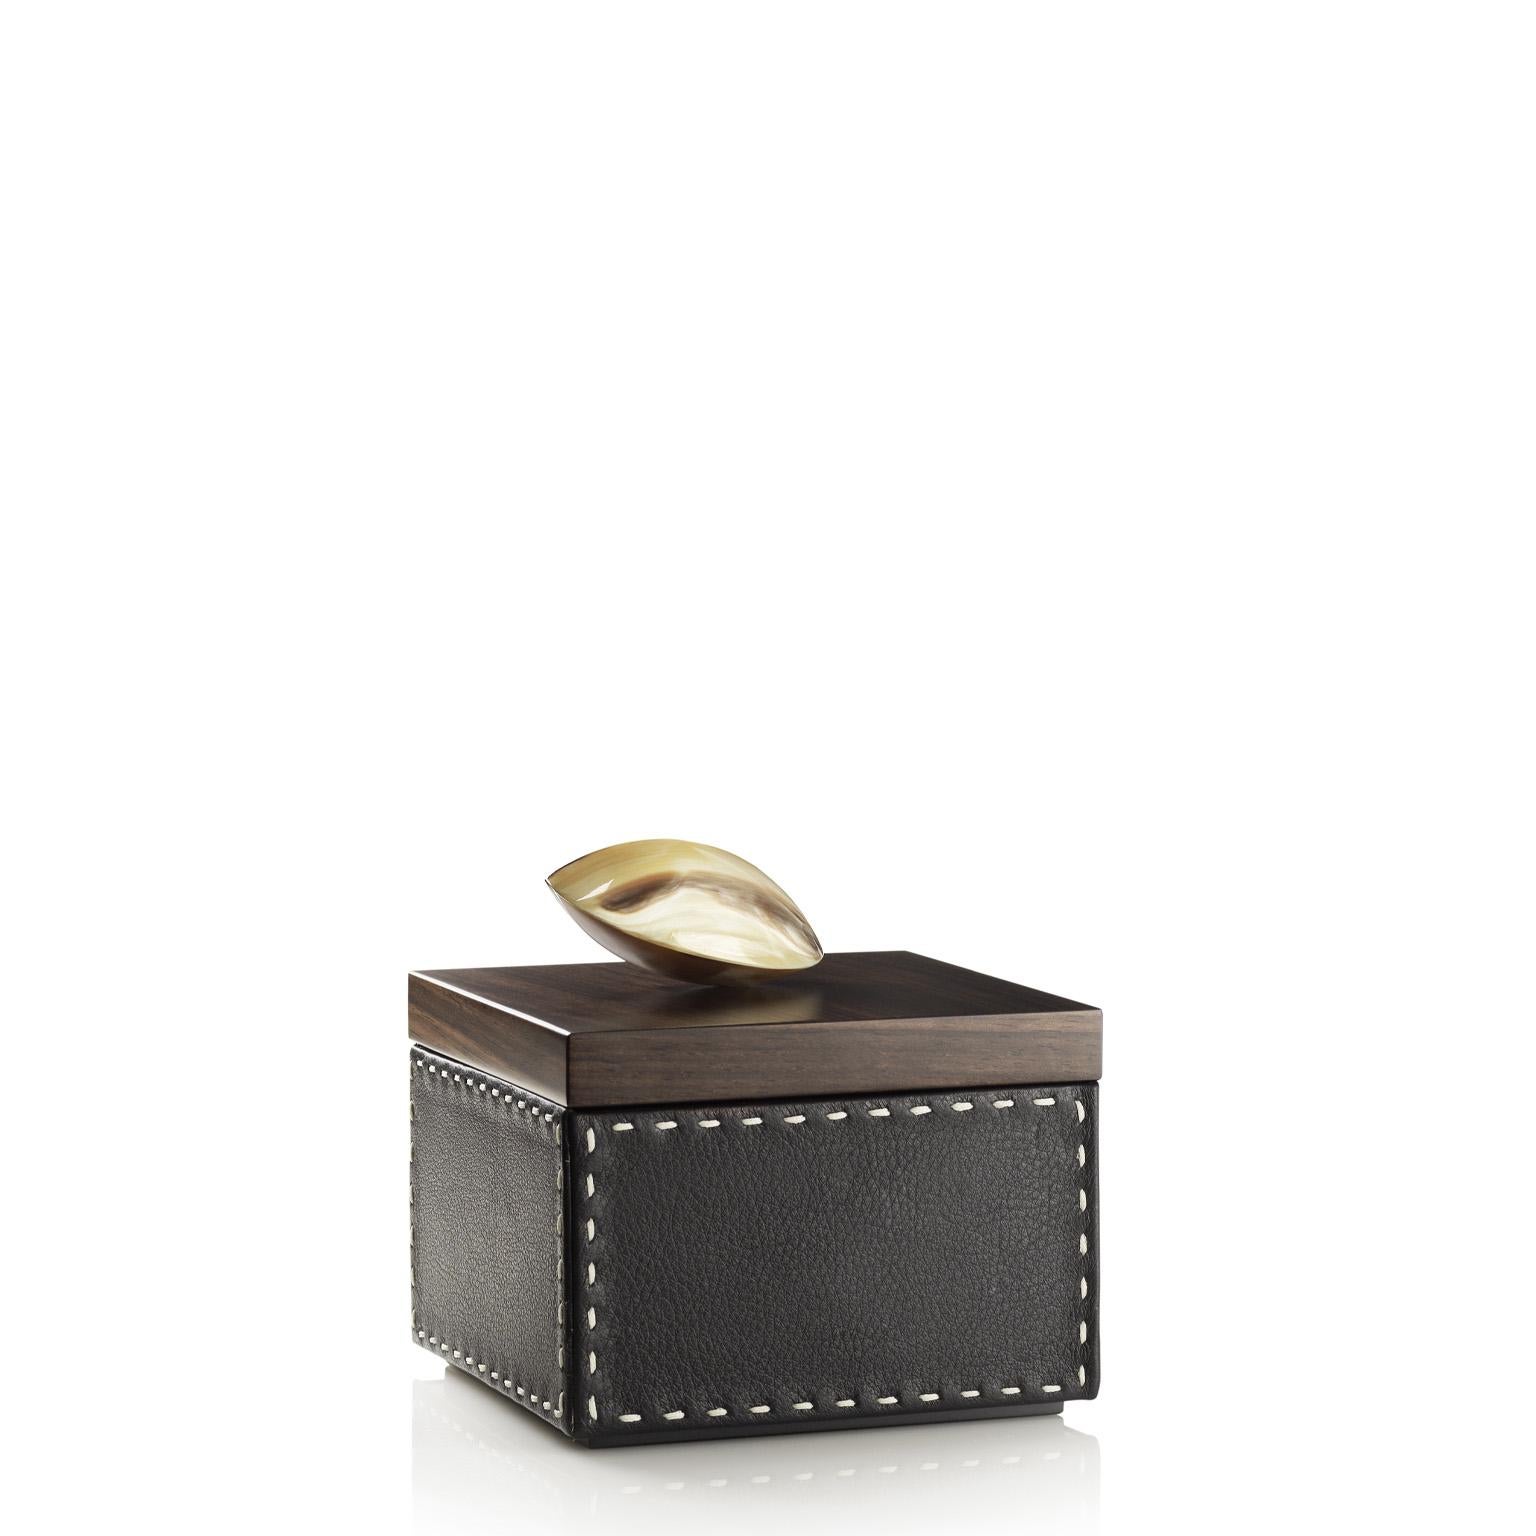 Contemporary Capricia Square Box in Pebbled leather with Handle in Corno Italiano, Mod. 4476 For Sale